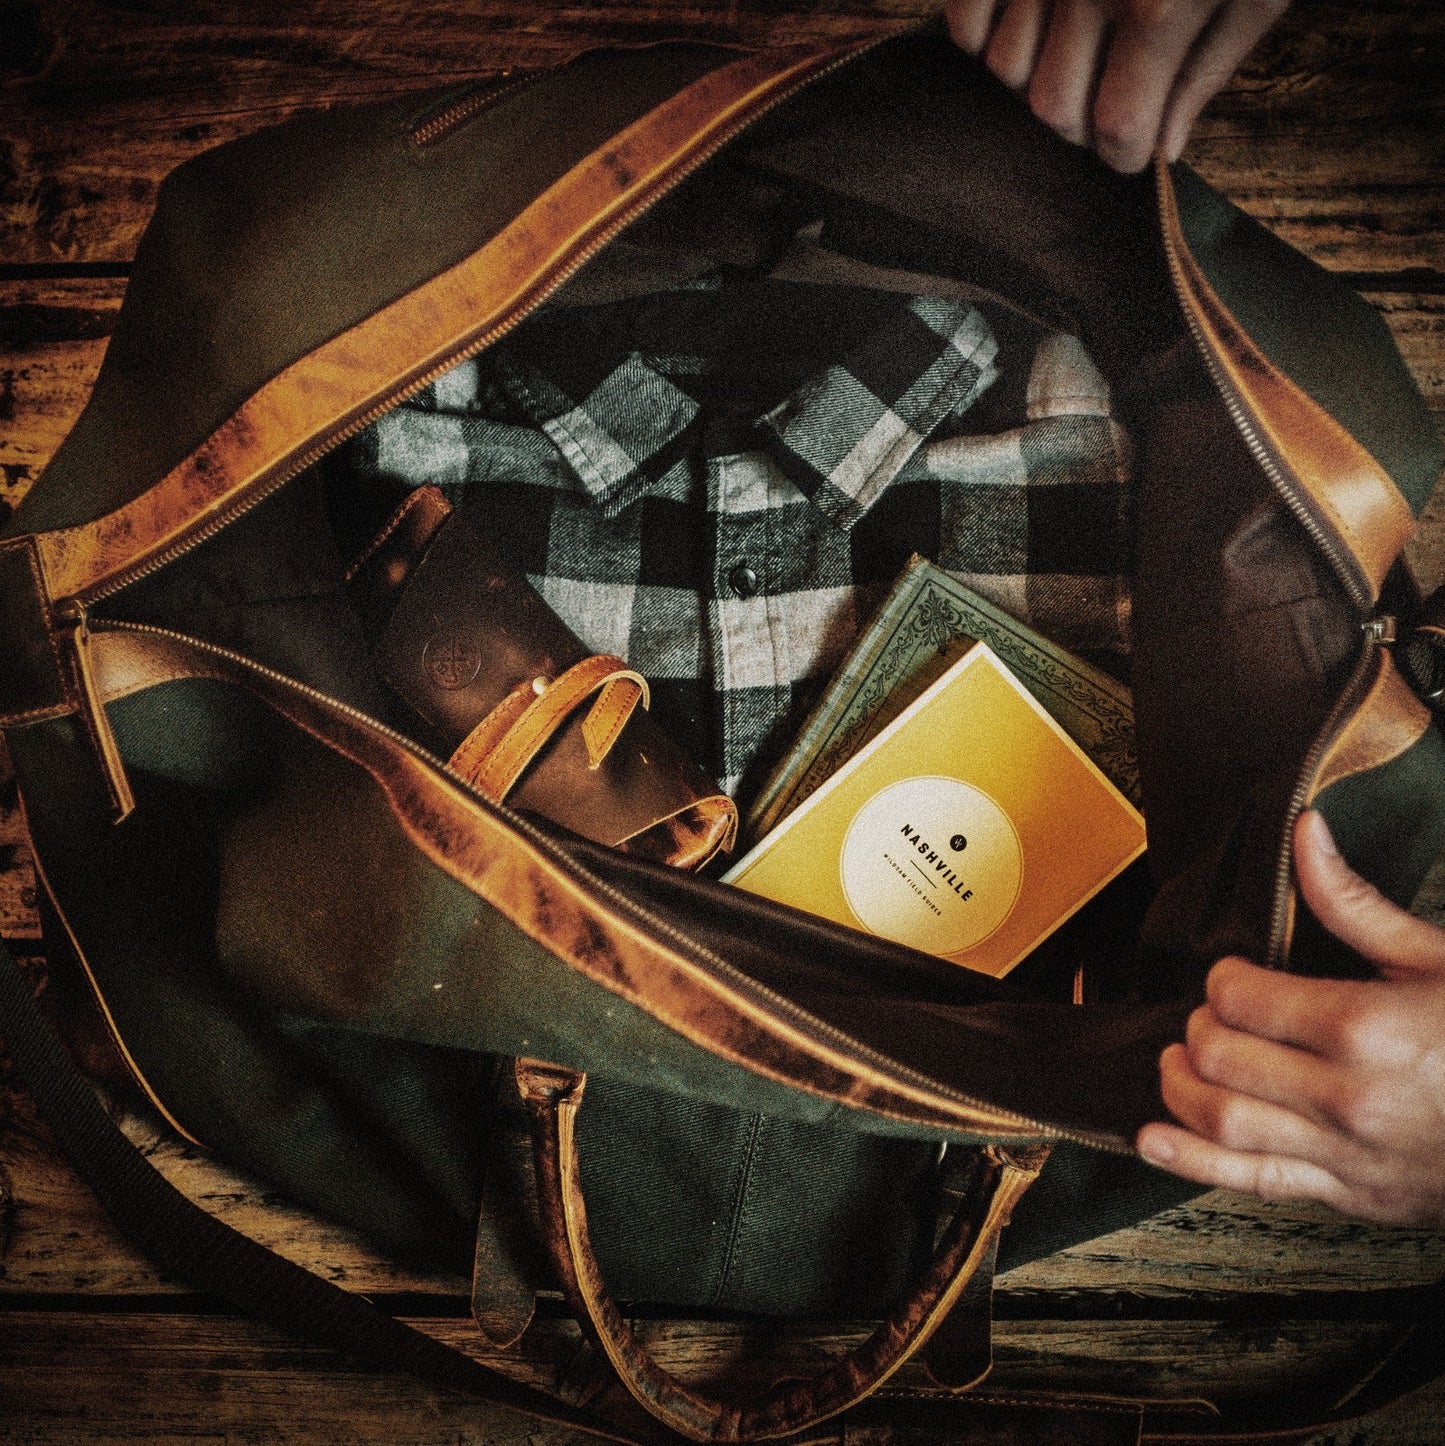 The “Weekender” Duffle Bag by Vintage Gentlemen